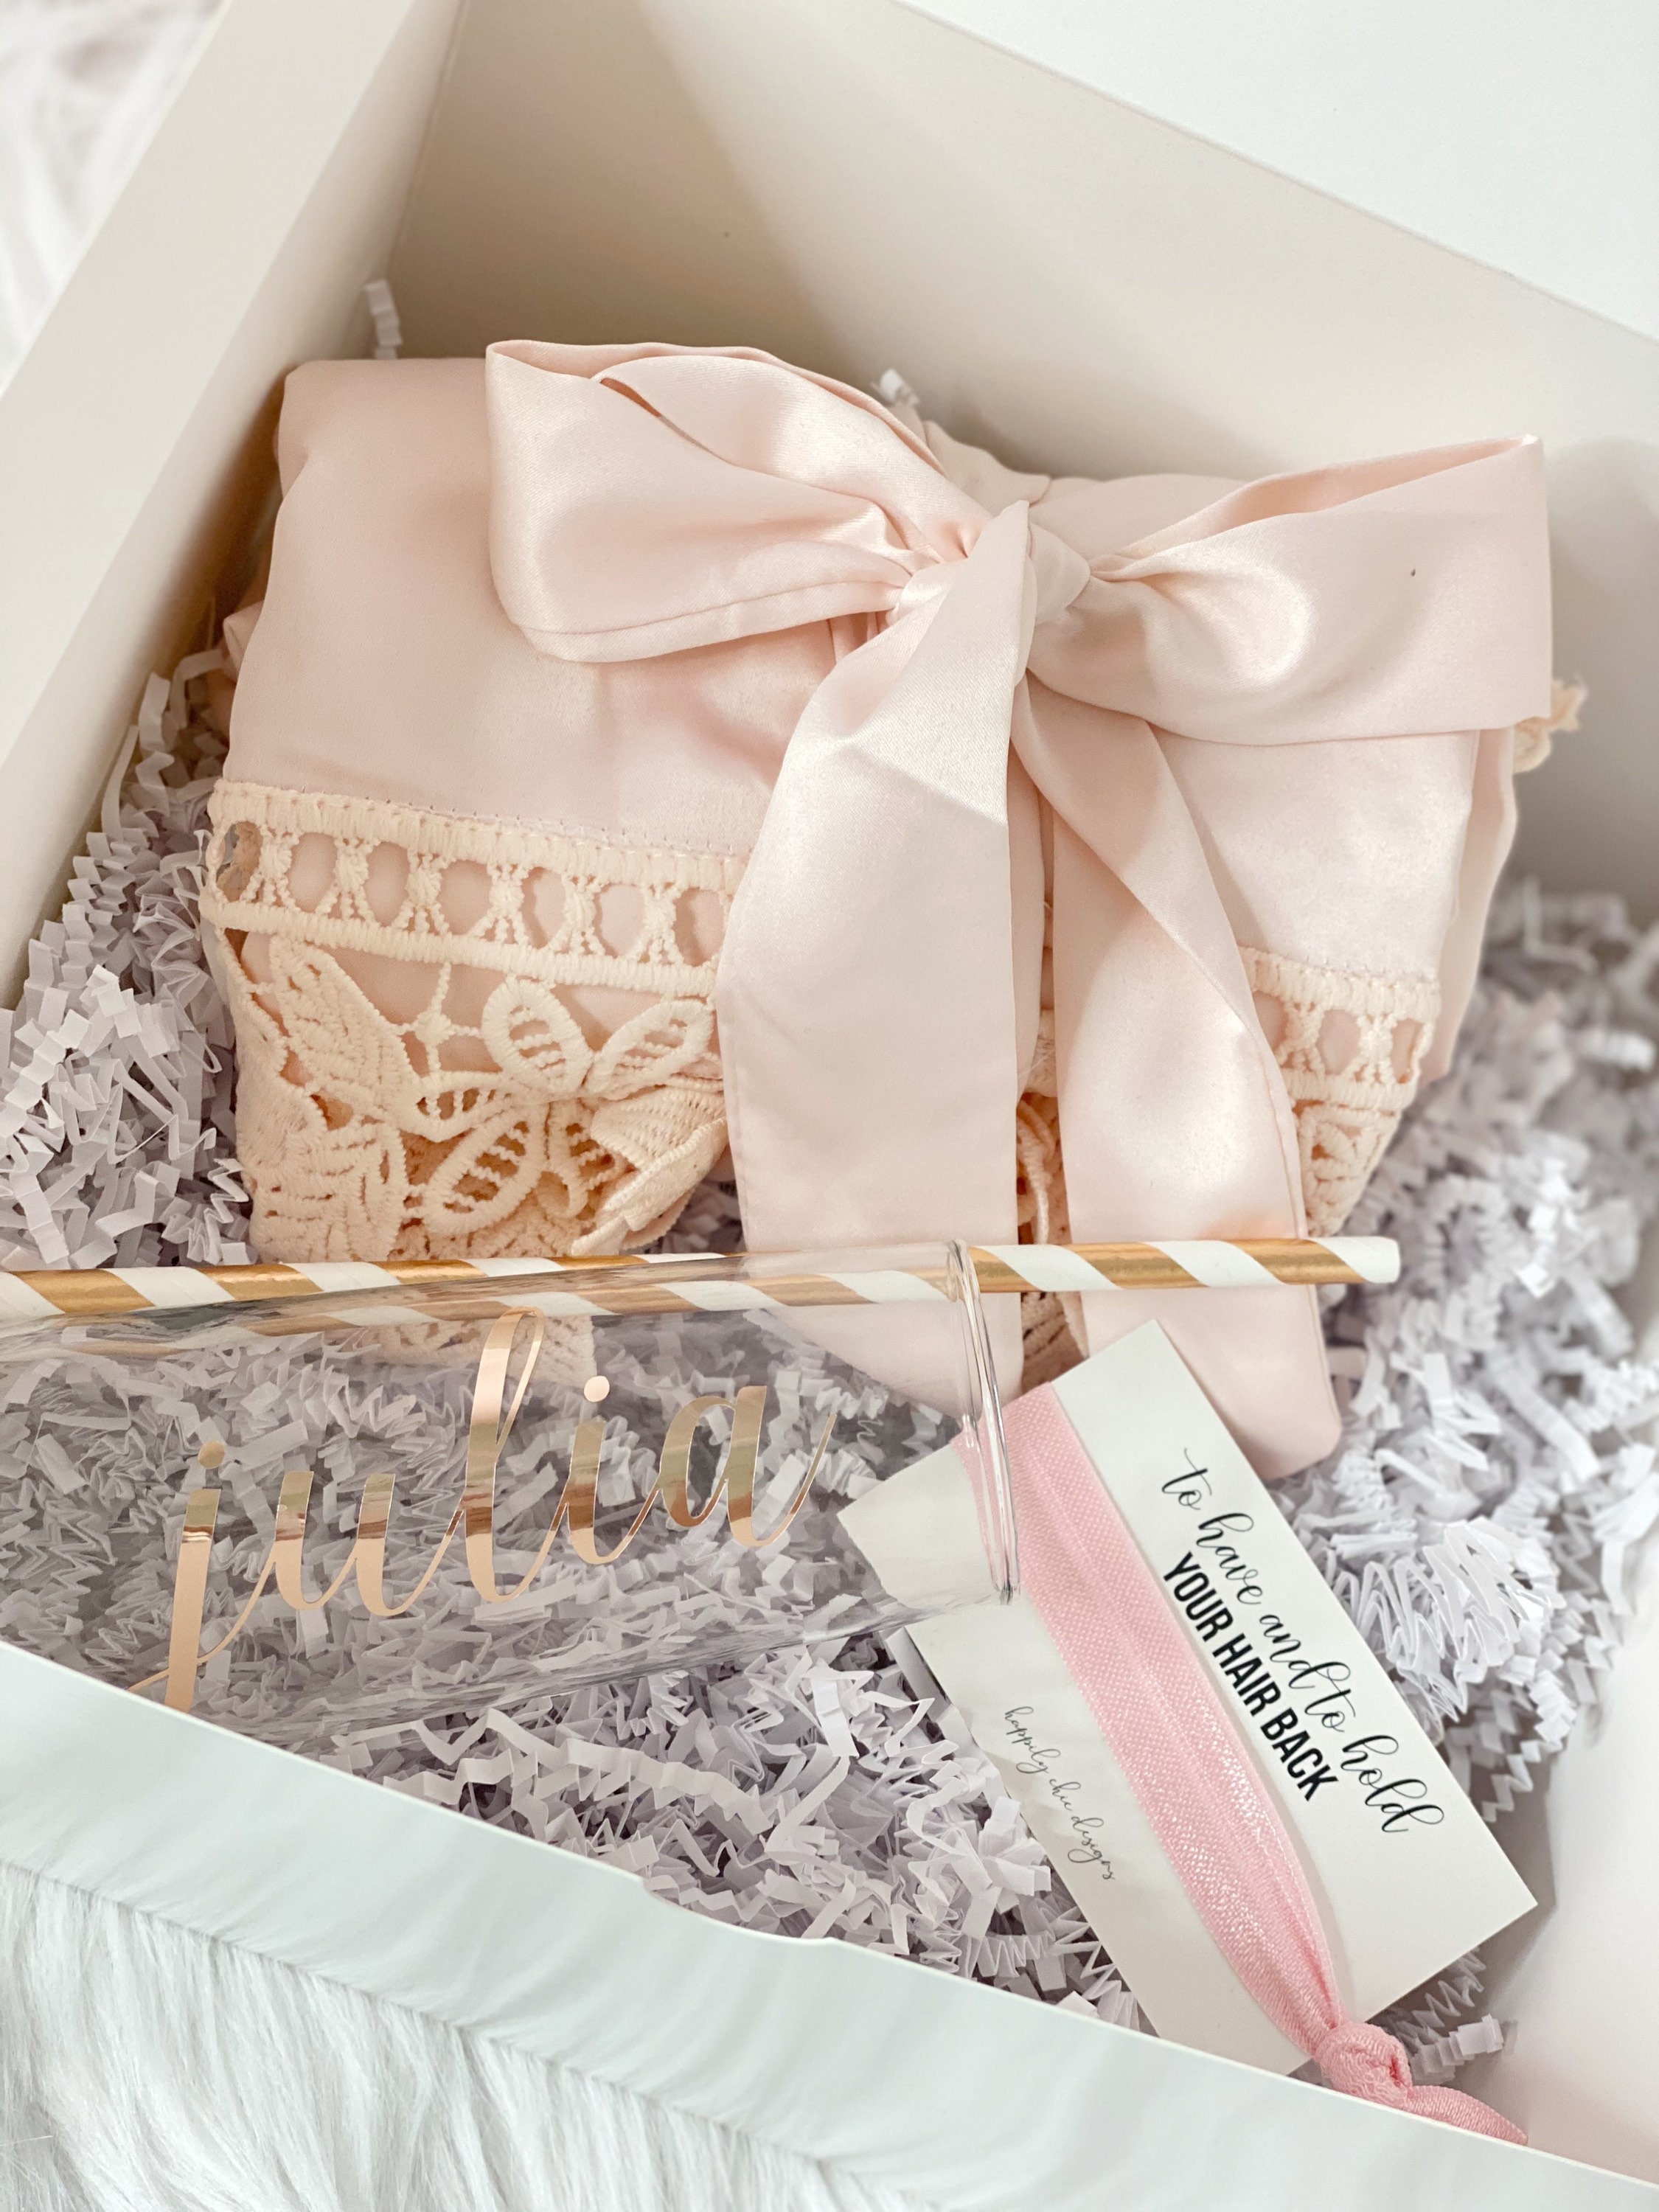 Custom Engraved Tumbler & Robe Box Set - Bridesmaid Gift - Bridesmaid Gifts  Boutique